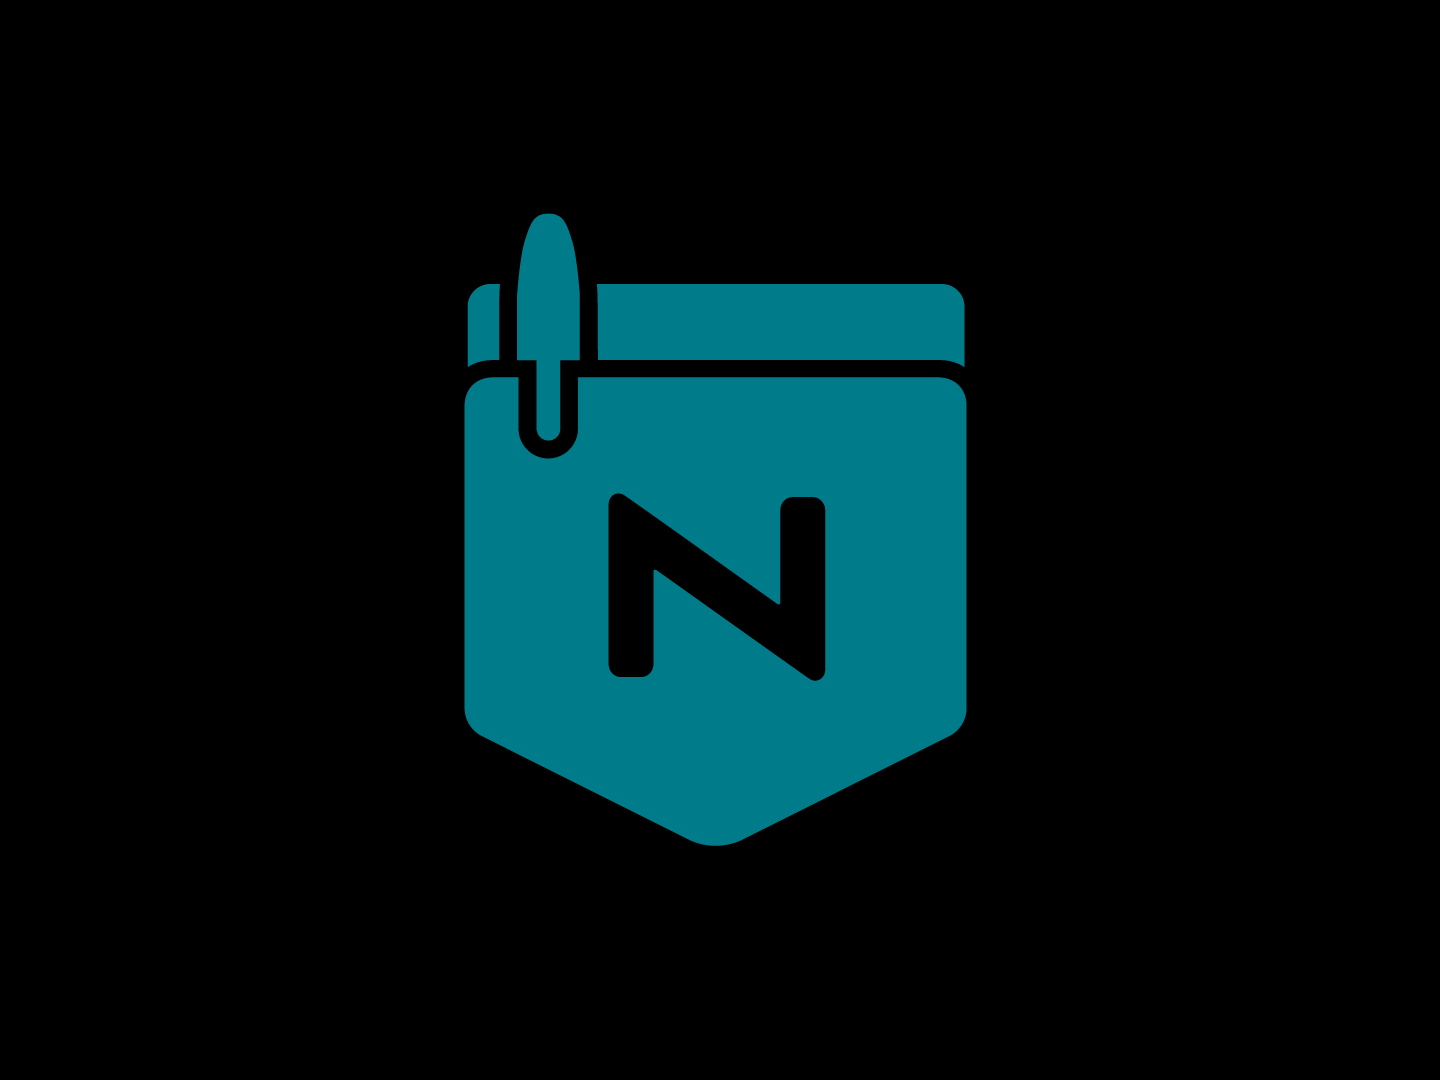 Nerdery logo